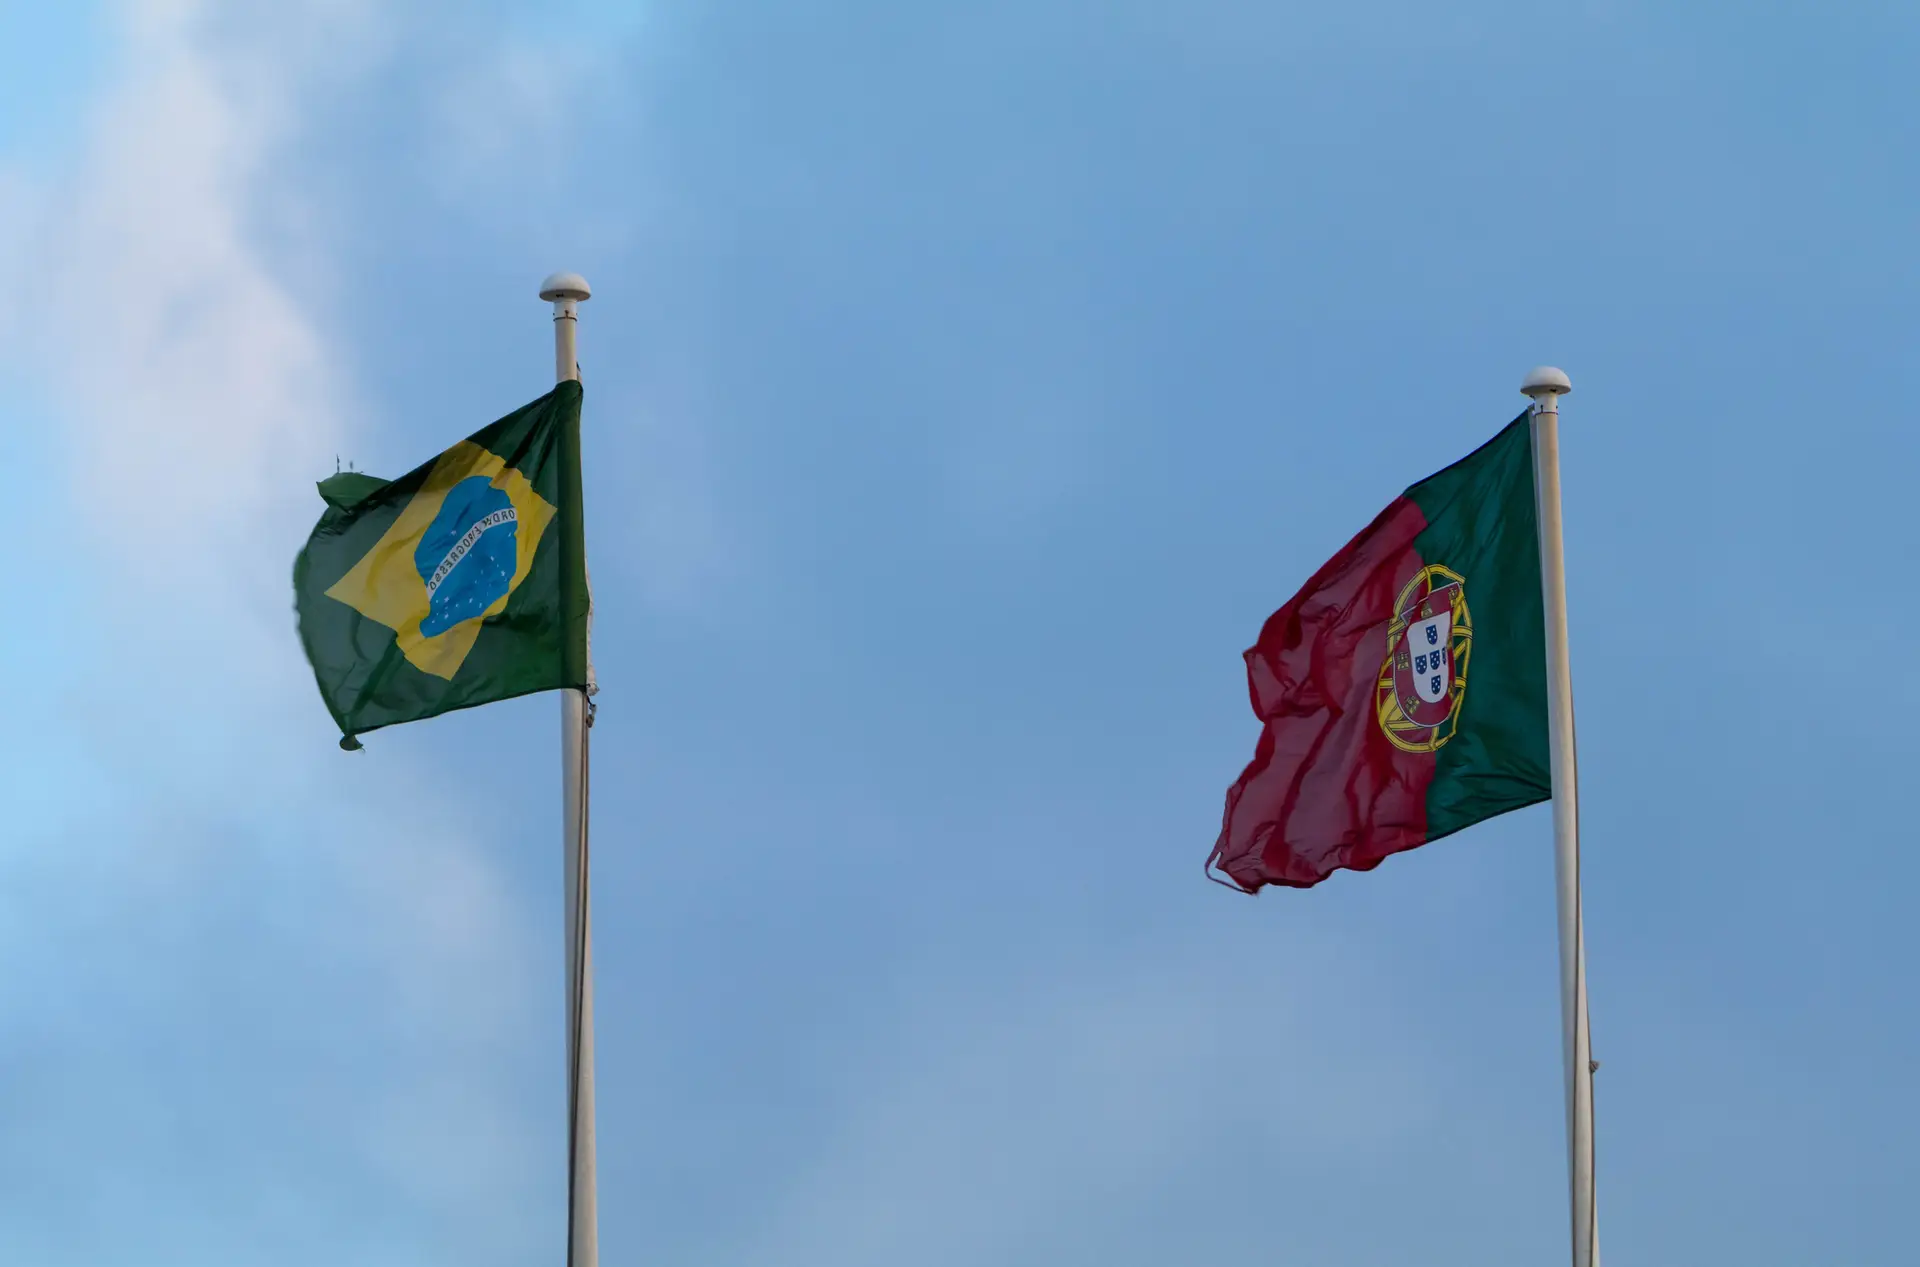 Trabalhadores consulares portugueses no Brasil com atualização salarial extra